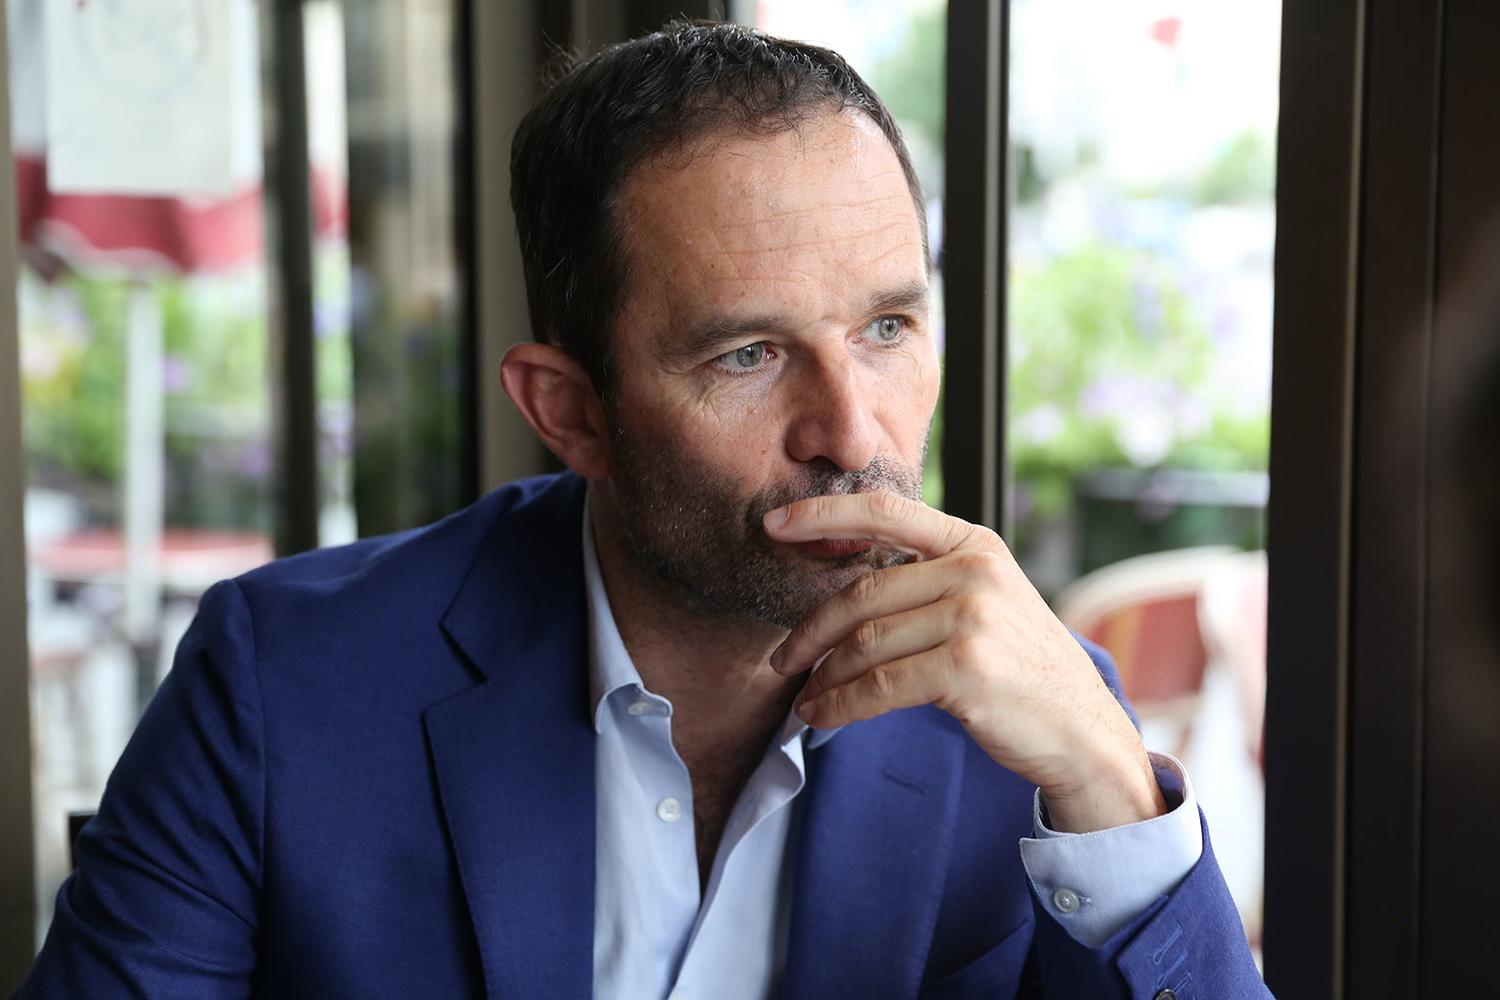 Benoît Hamon es fundador del nuevo movimiento Génération·s y socio europeo de Varoufakis